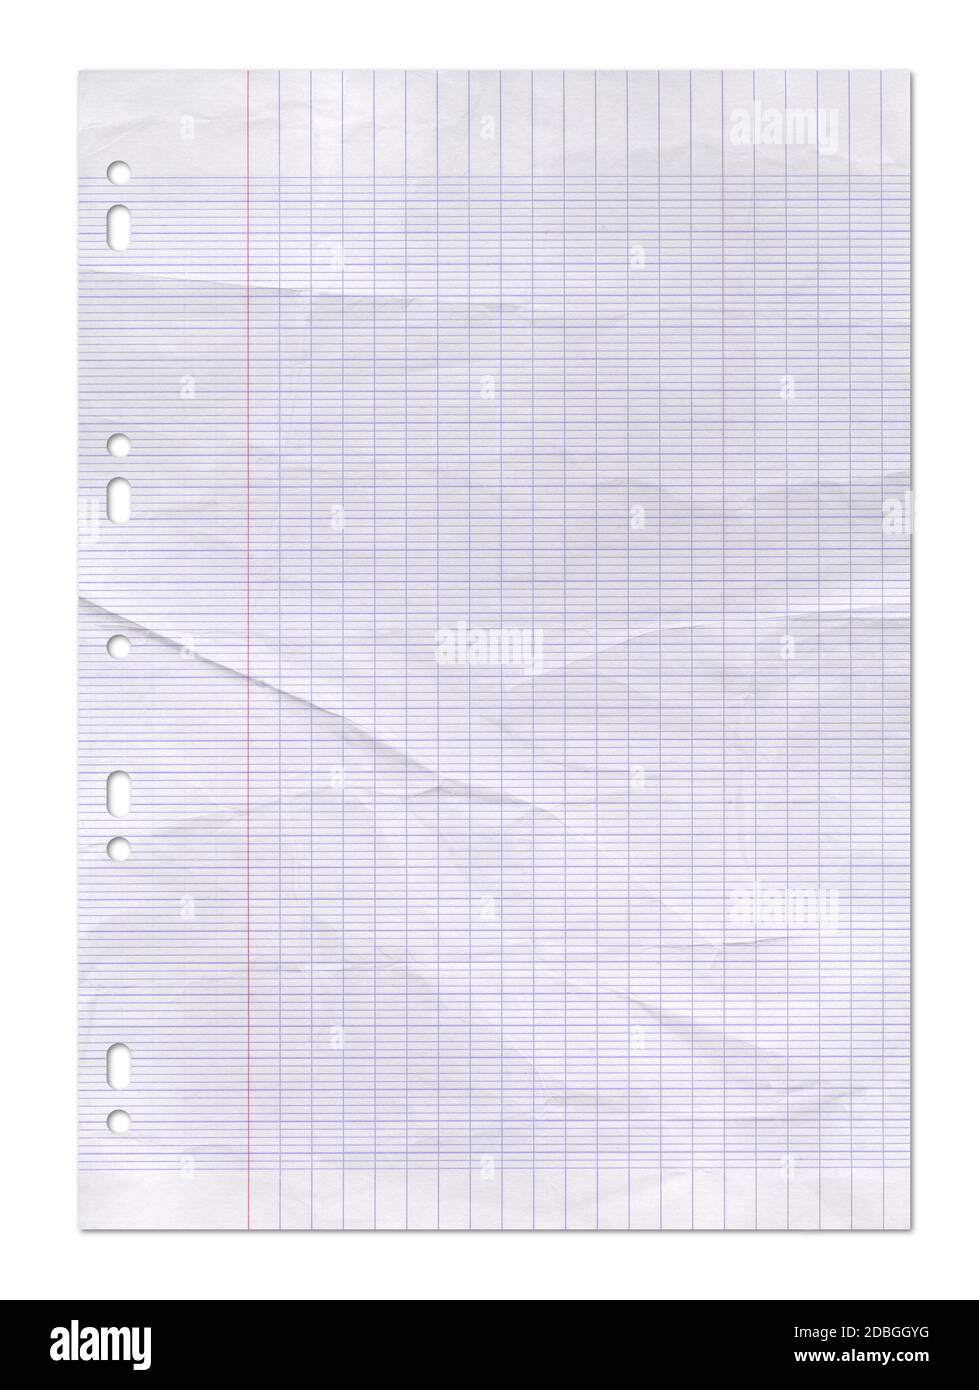 Arrière-plan de texture de feuille de papier doublée usé Photo